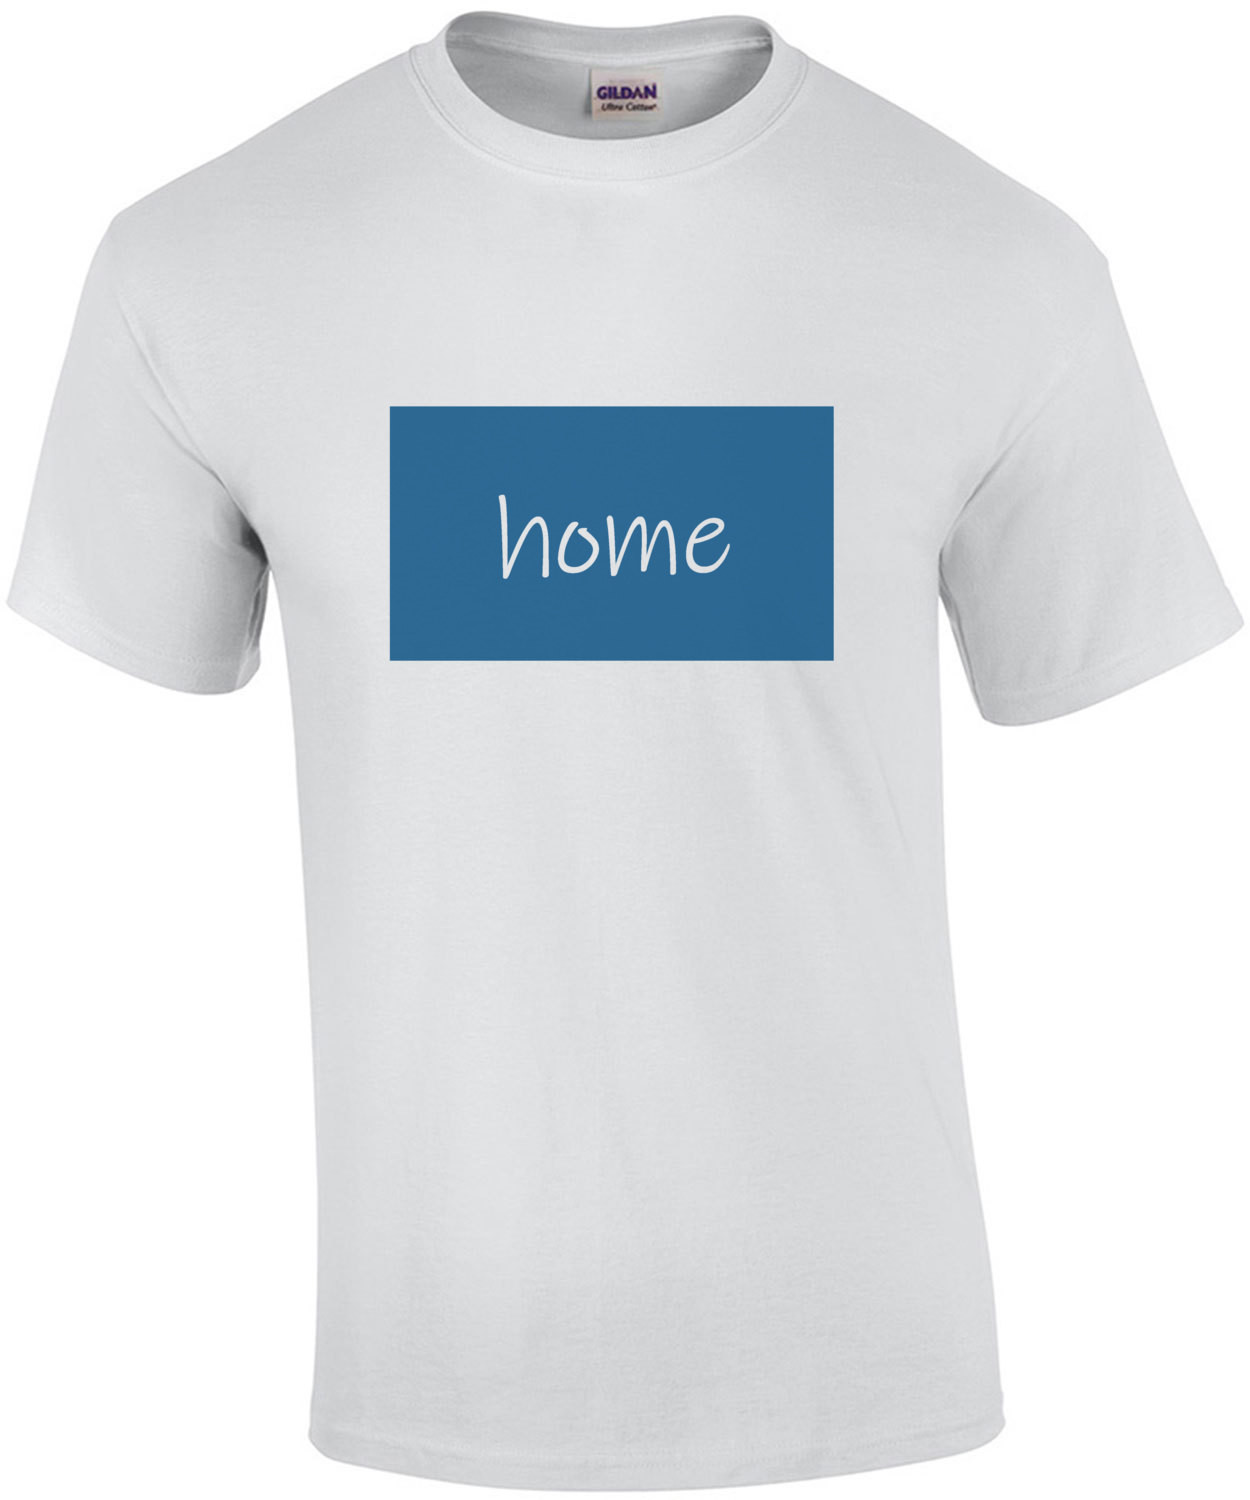 Home - Wyoming T-Shirt